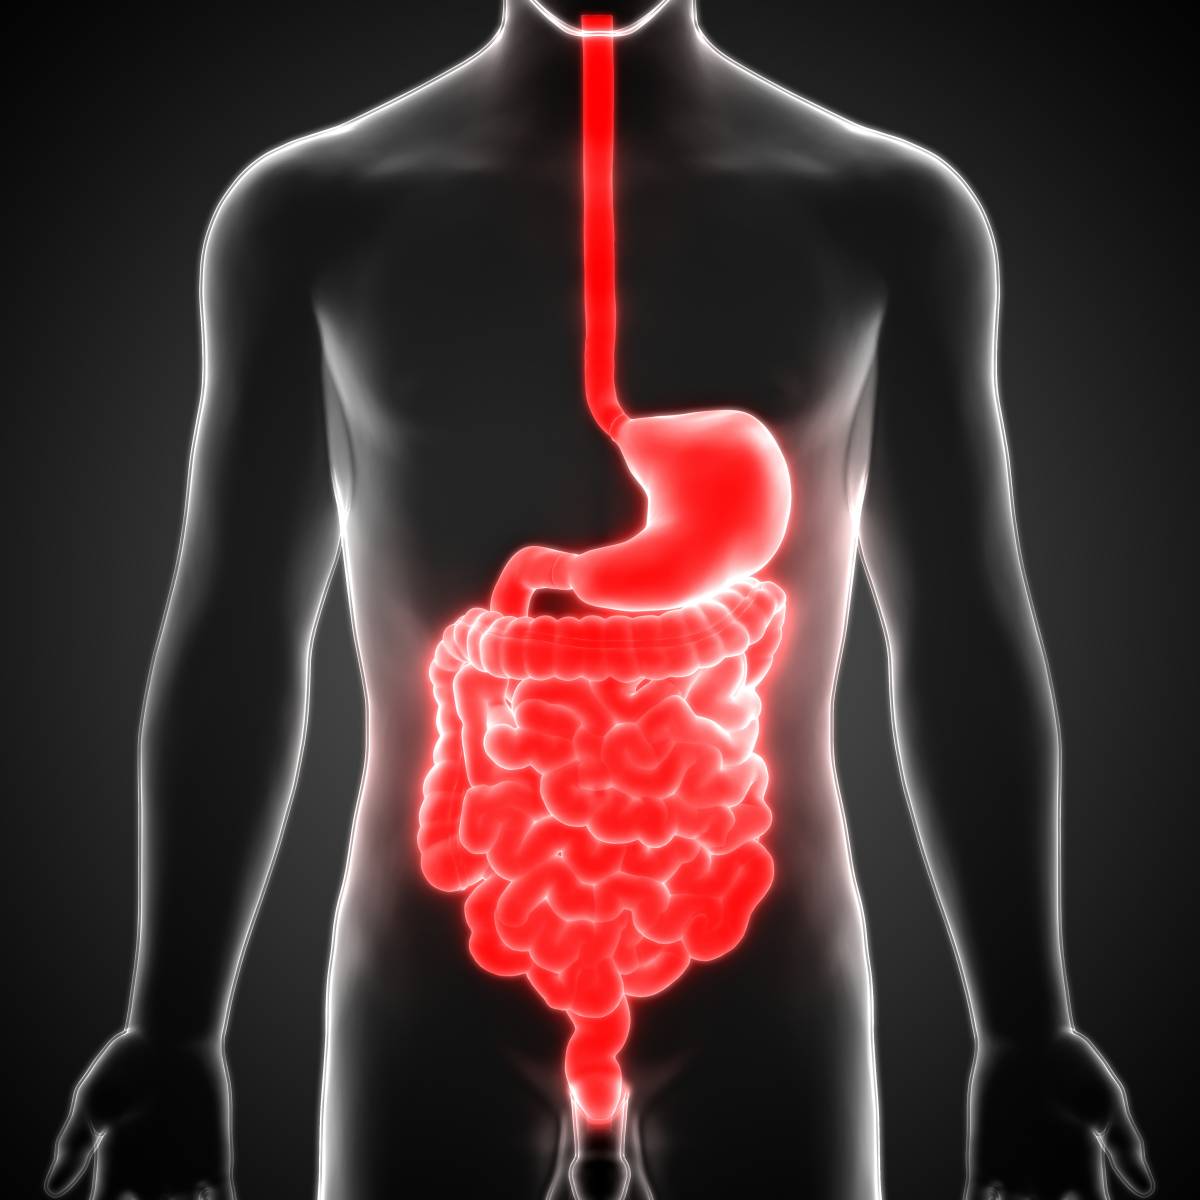 消化系统模型_系统解剖模型 人体消化系统解剖 肝 胃大肠 - 阿里巴巴